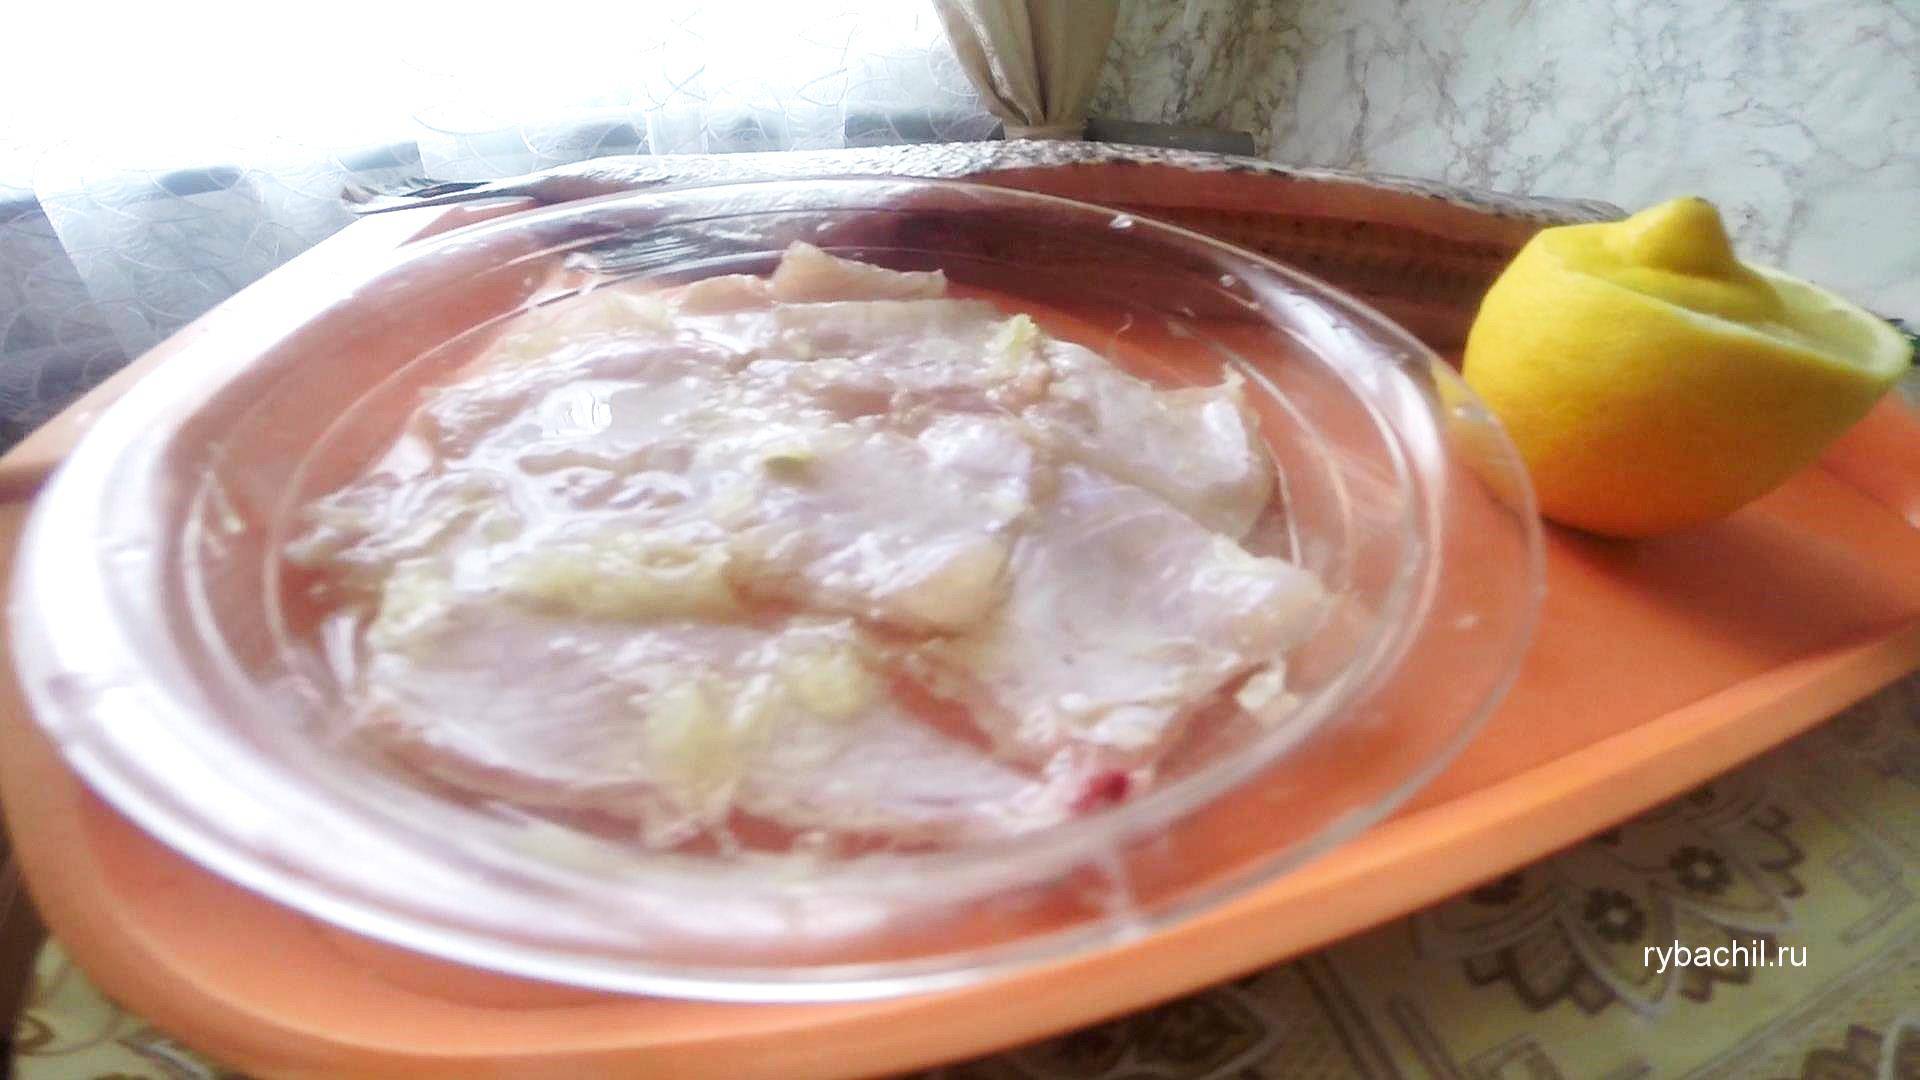 Маринованная щука – пошаговый фото рецепт быстрого приготовления с луком и уксусом в домашних условиях